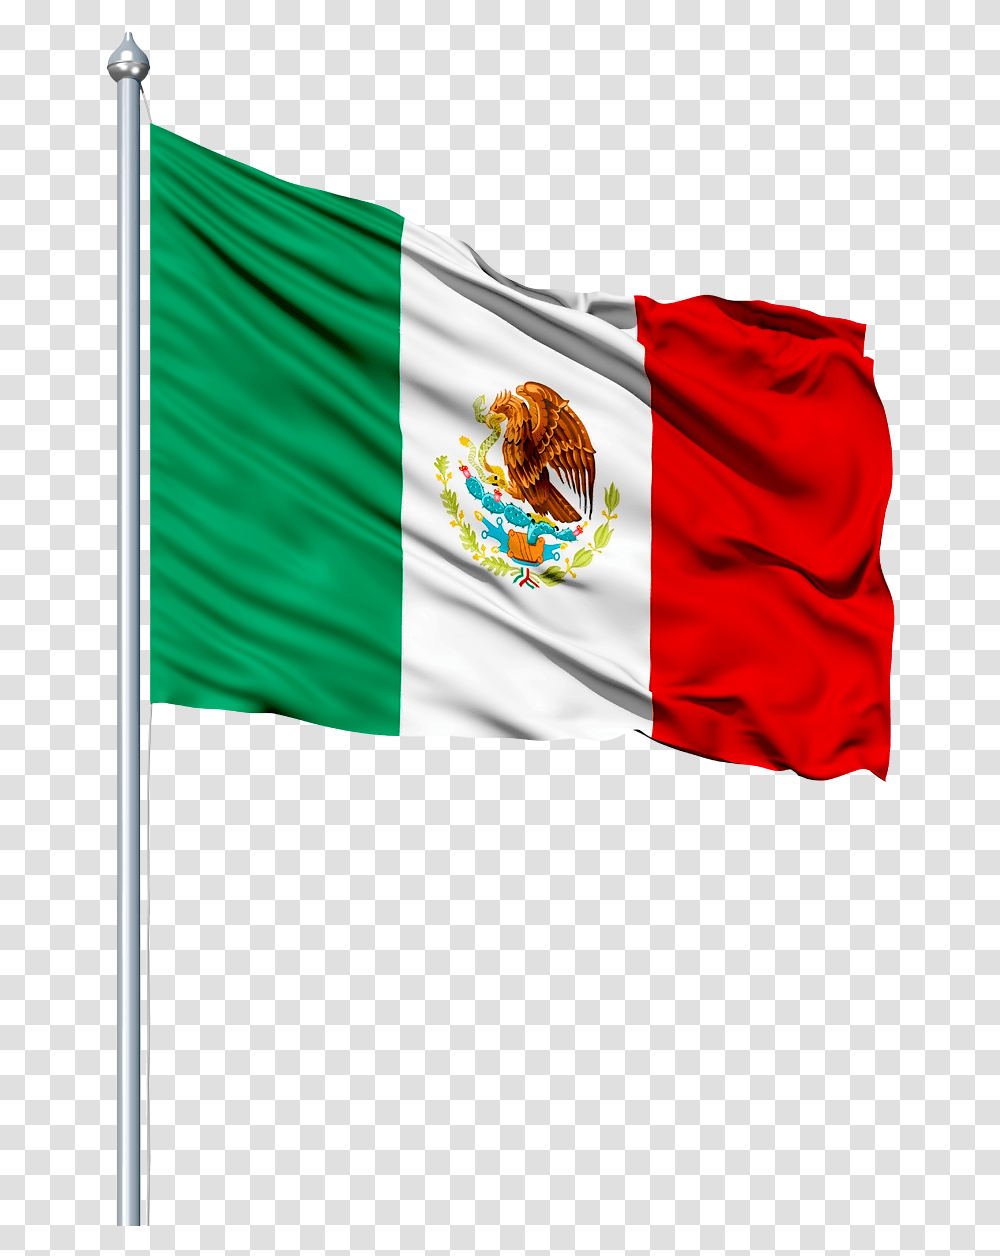 Bandera De Mexico, Flag, American Flag Transparent Png